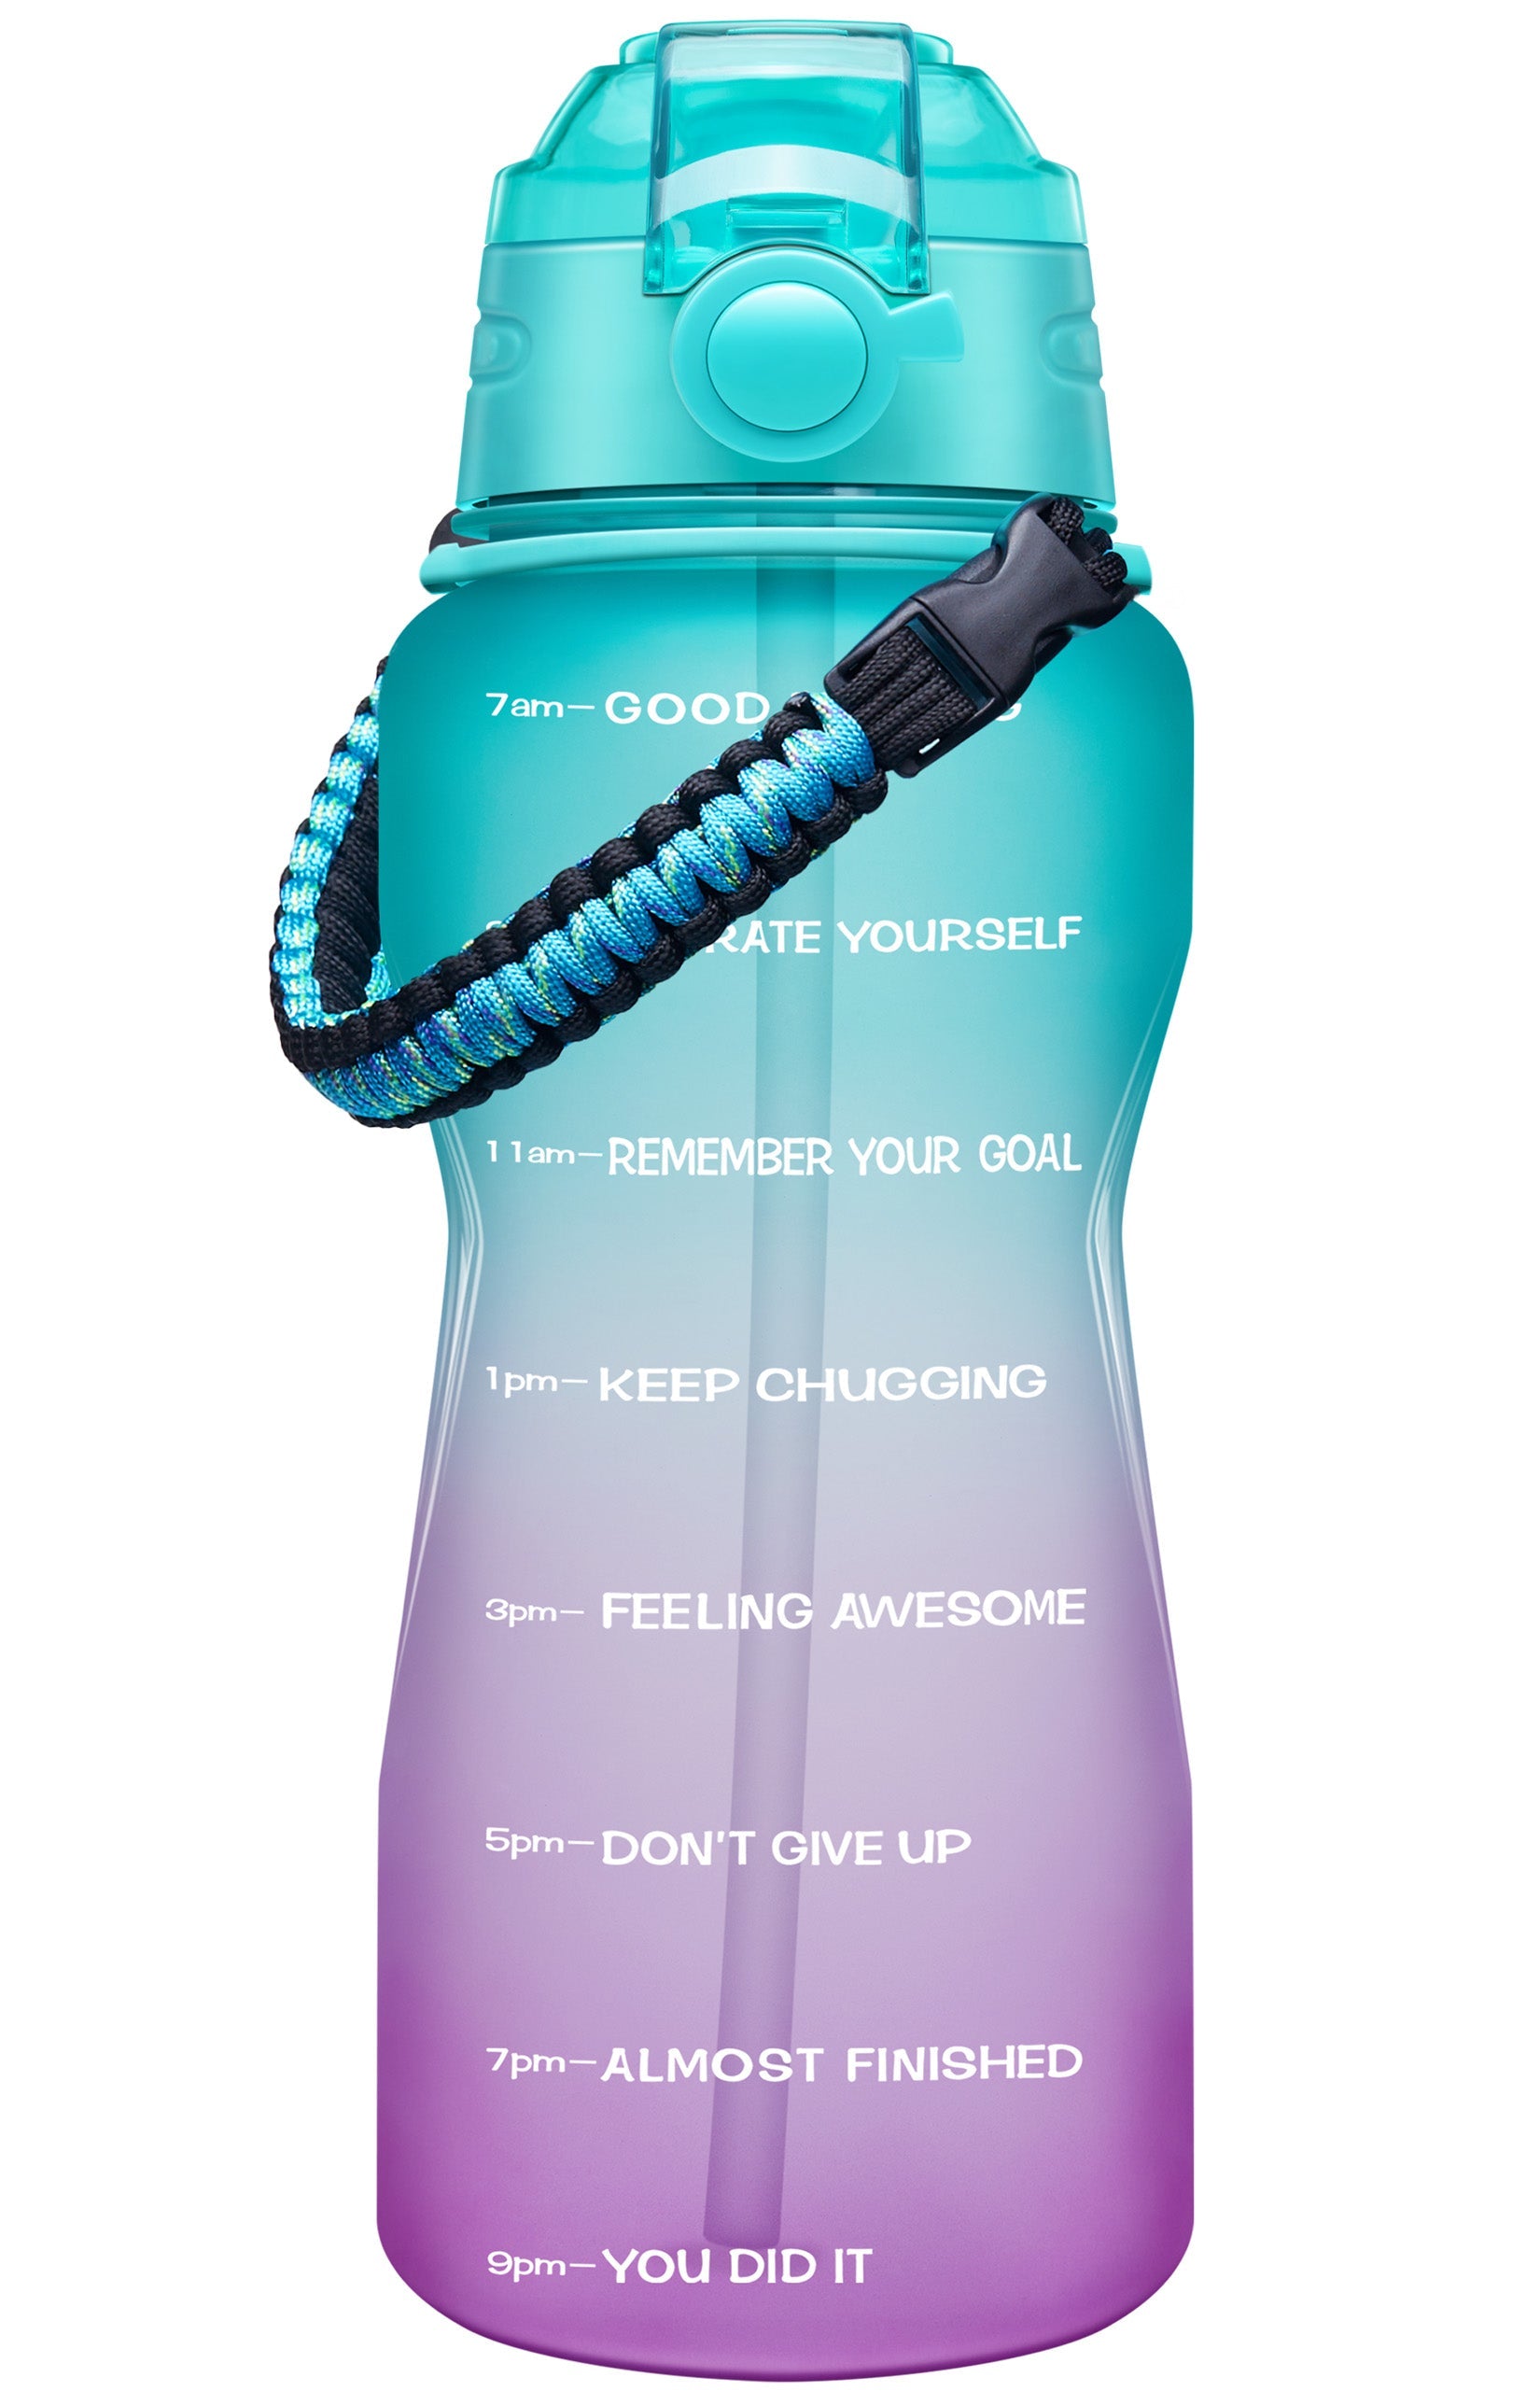 kylie jenner water bottle in cups｜TikTok Search